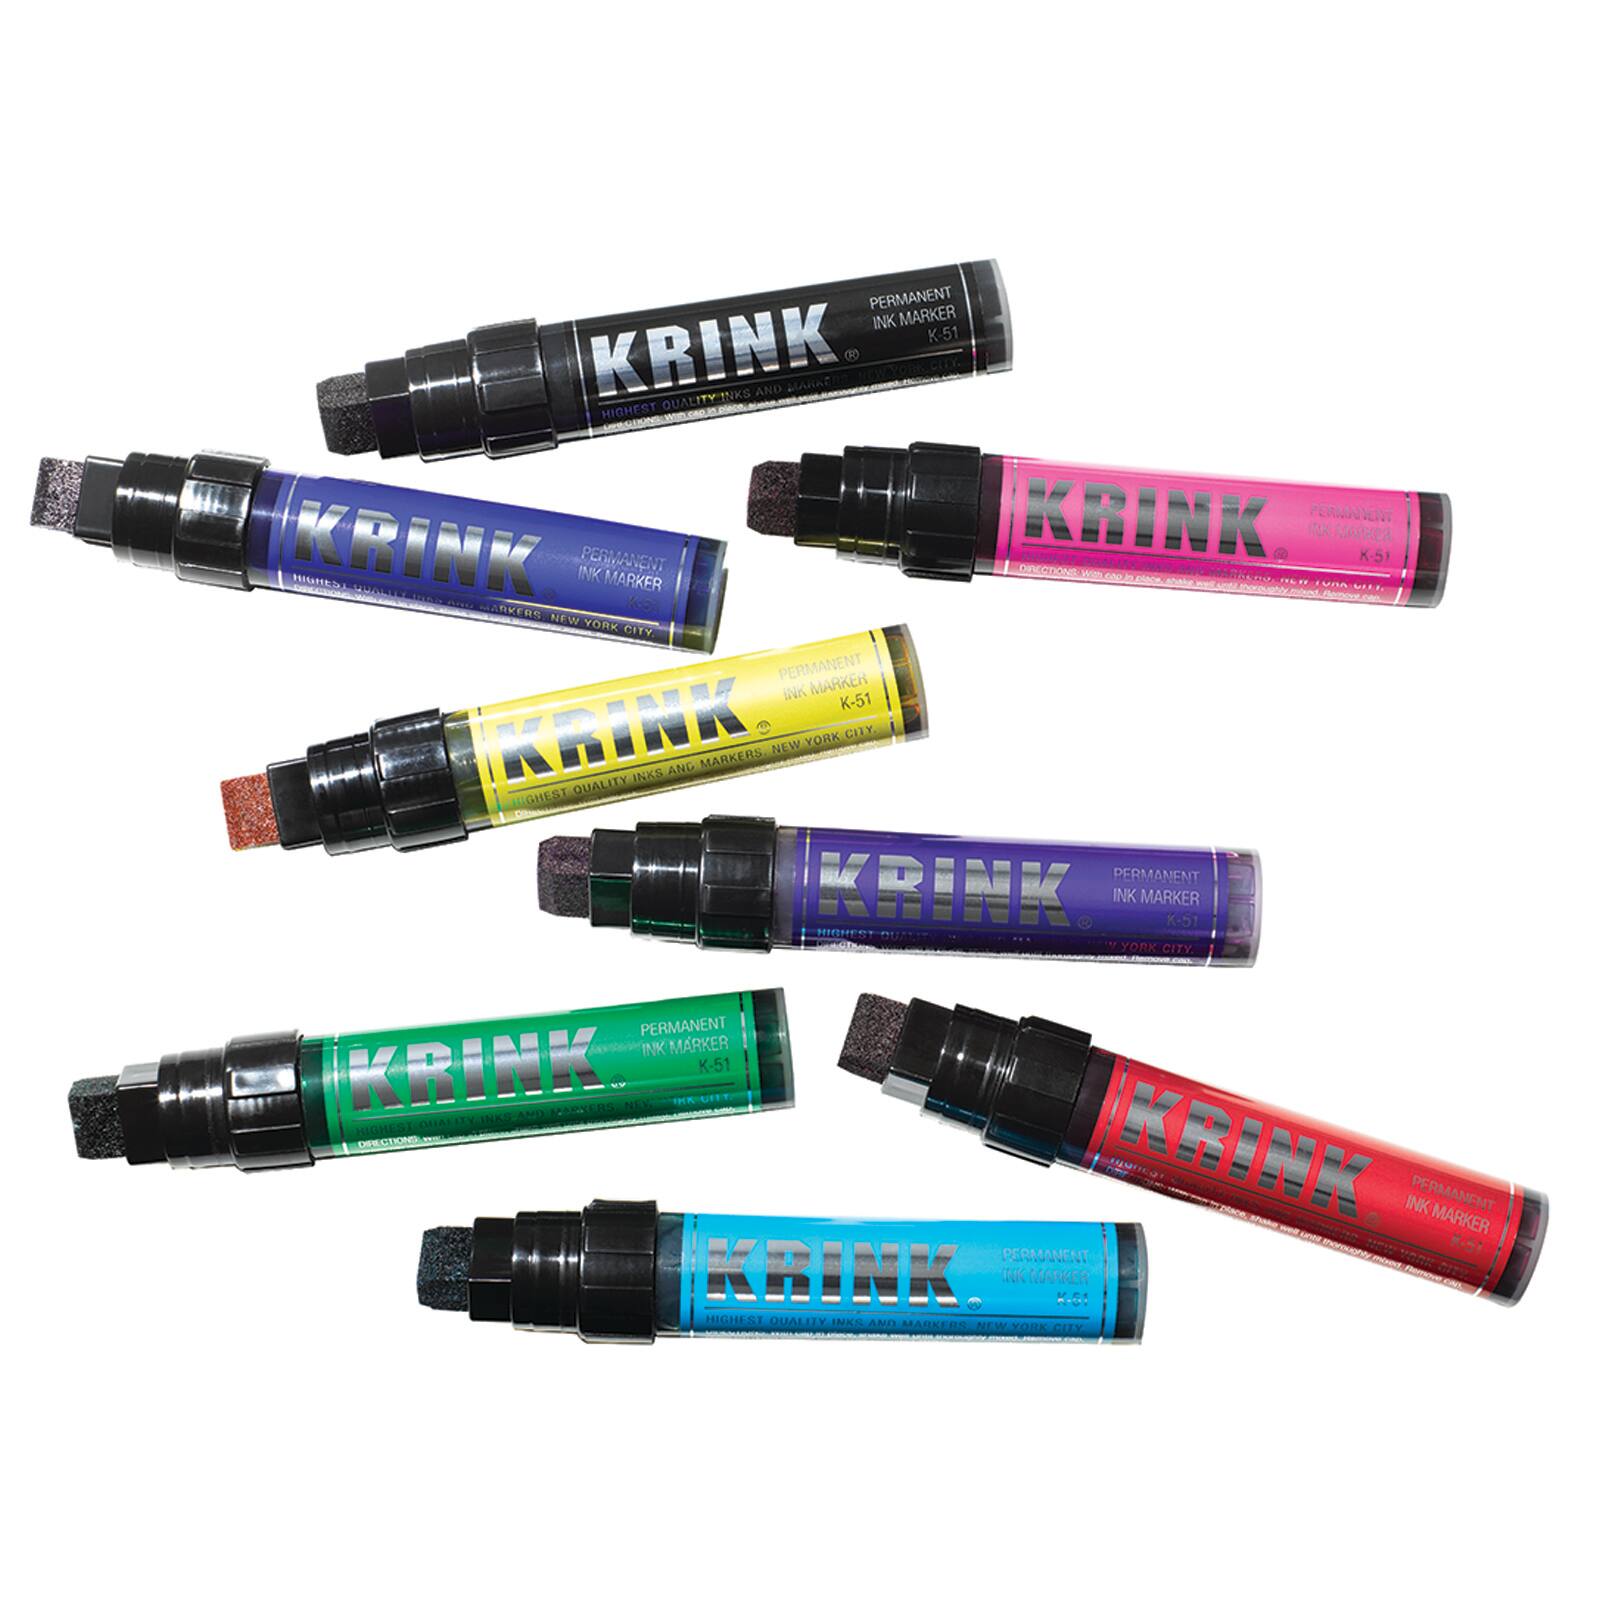 Krink® K-51 Permanent Ink Marker, Black